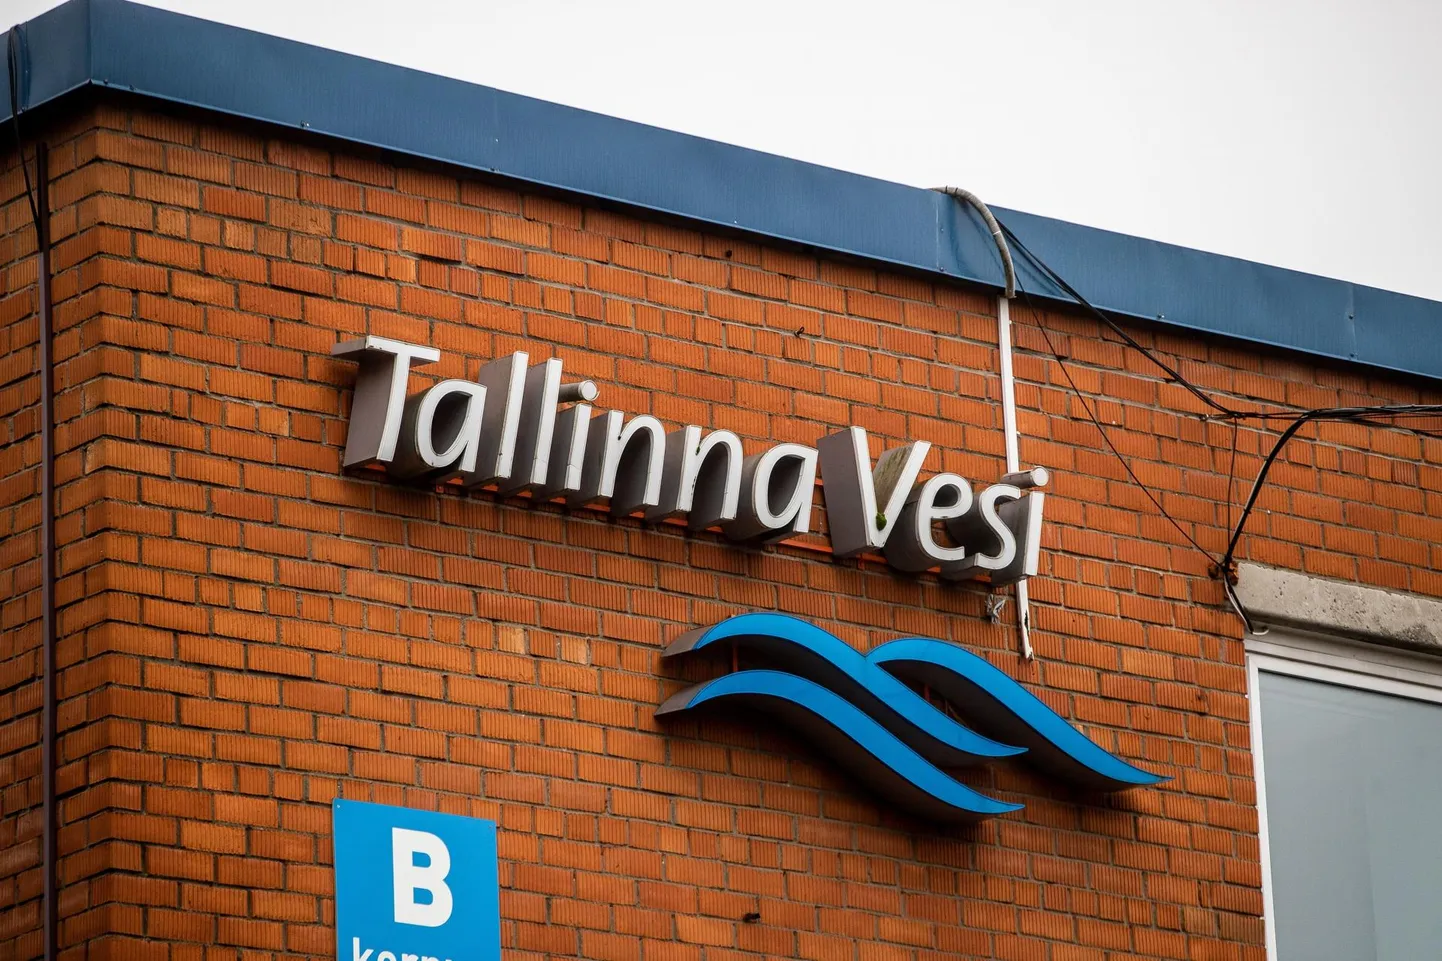 Tallinn 02.02.2020
Tallinna Vesi

Privately-owned water company Tallinna Vesi.
FOTO:SANDER ILVEST/POSTIMEES FOTO: Sander Ilvest/postimees Grupp/scanpix Baltics